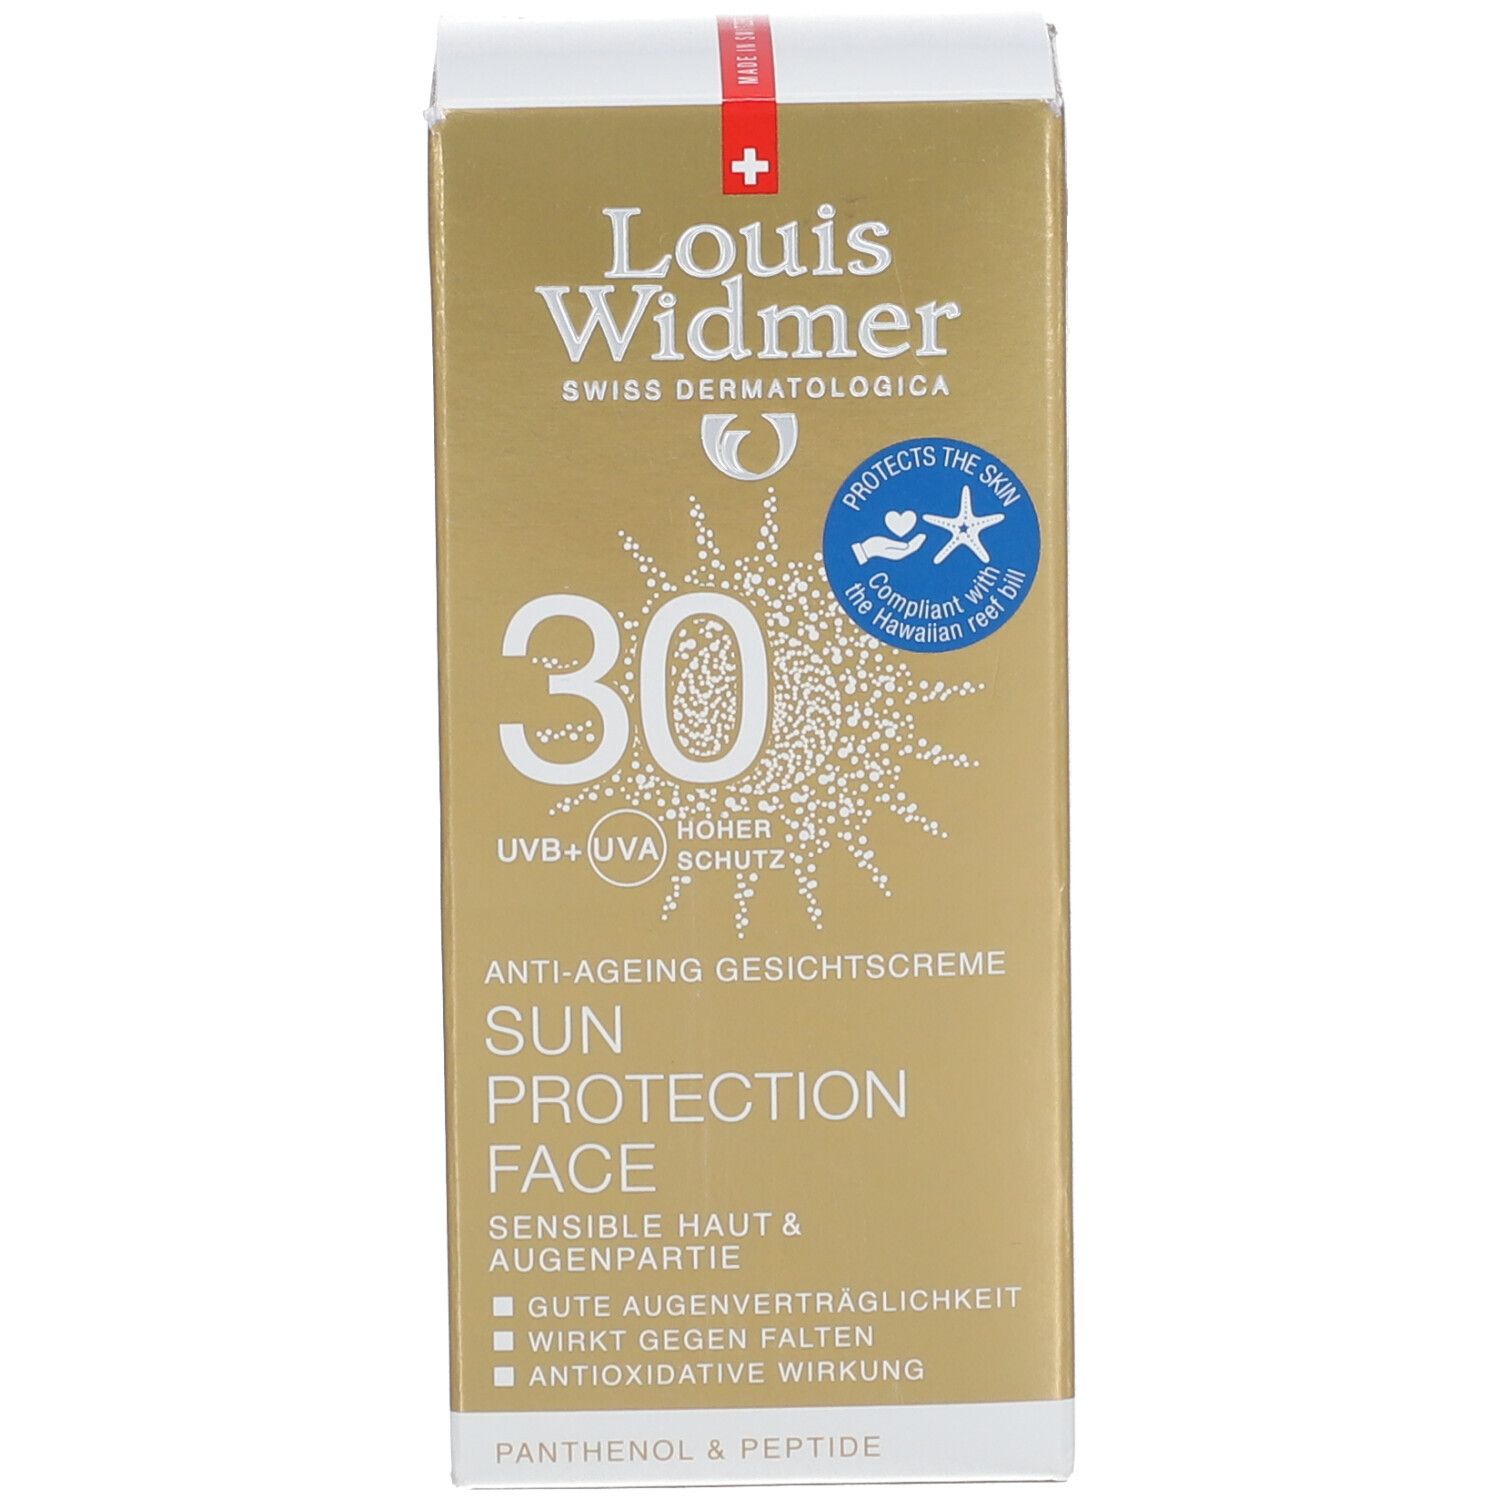 Louis Widmer Sun Protection Face 30 leicht parfümiert